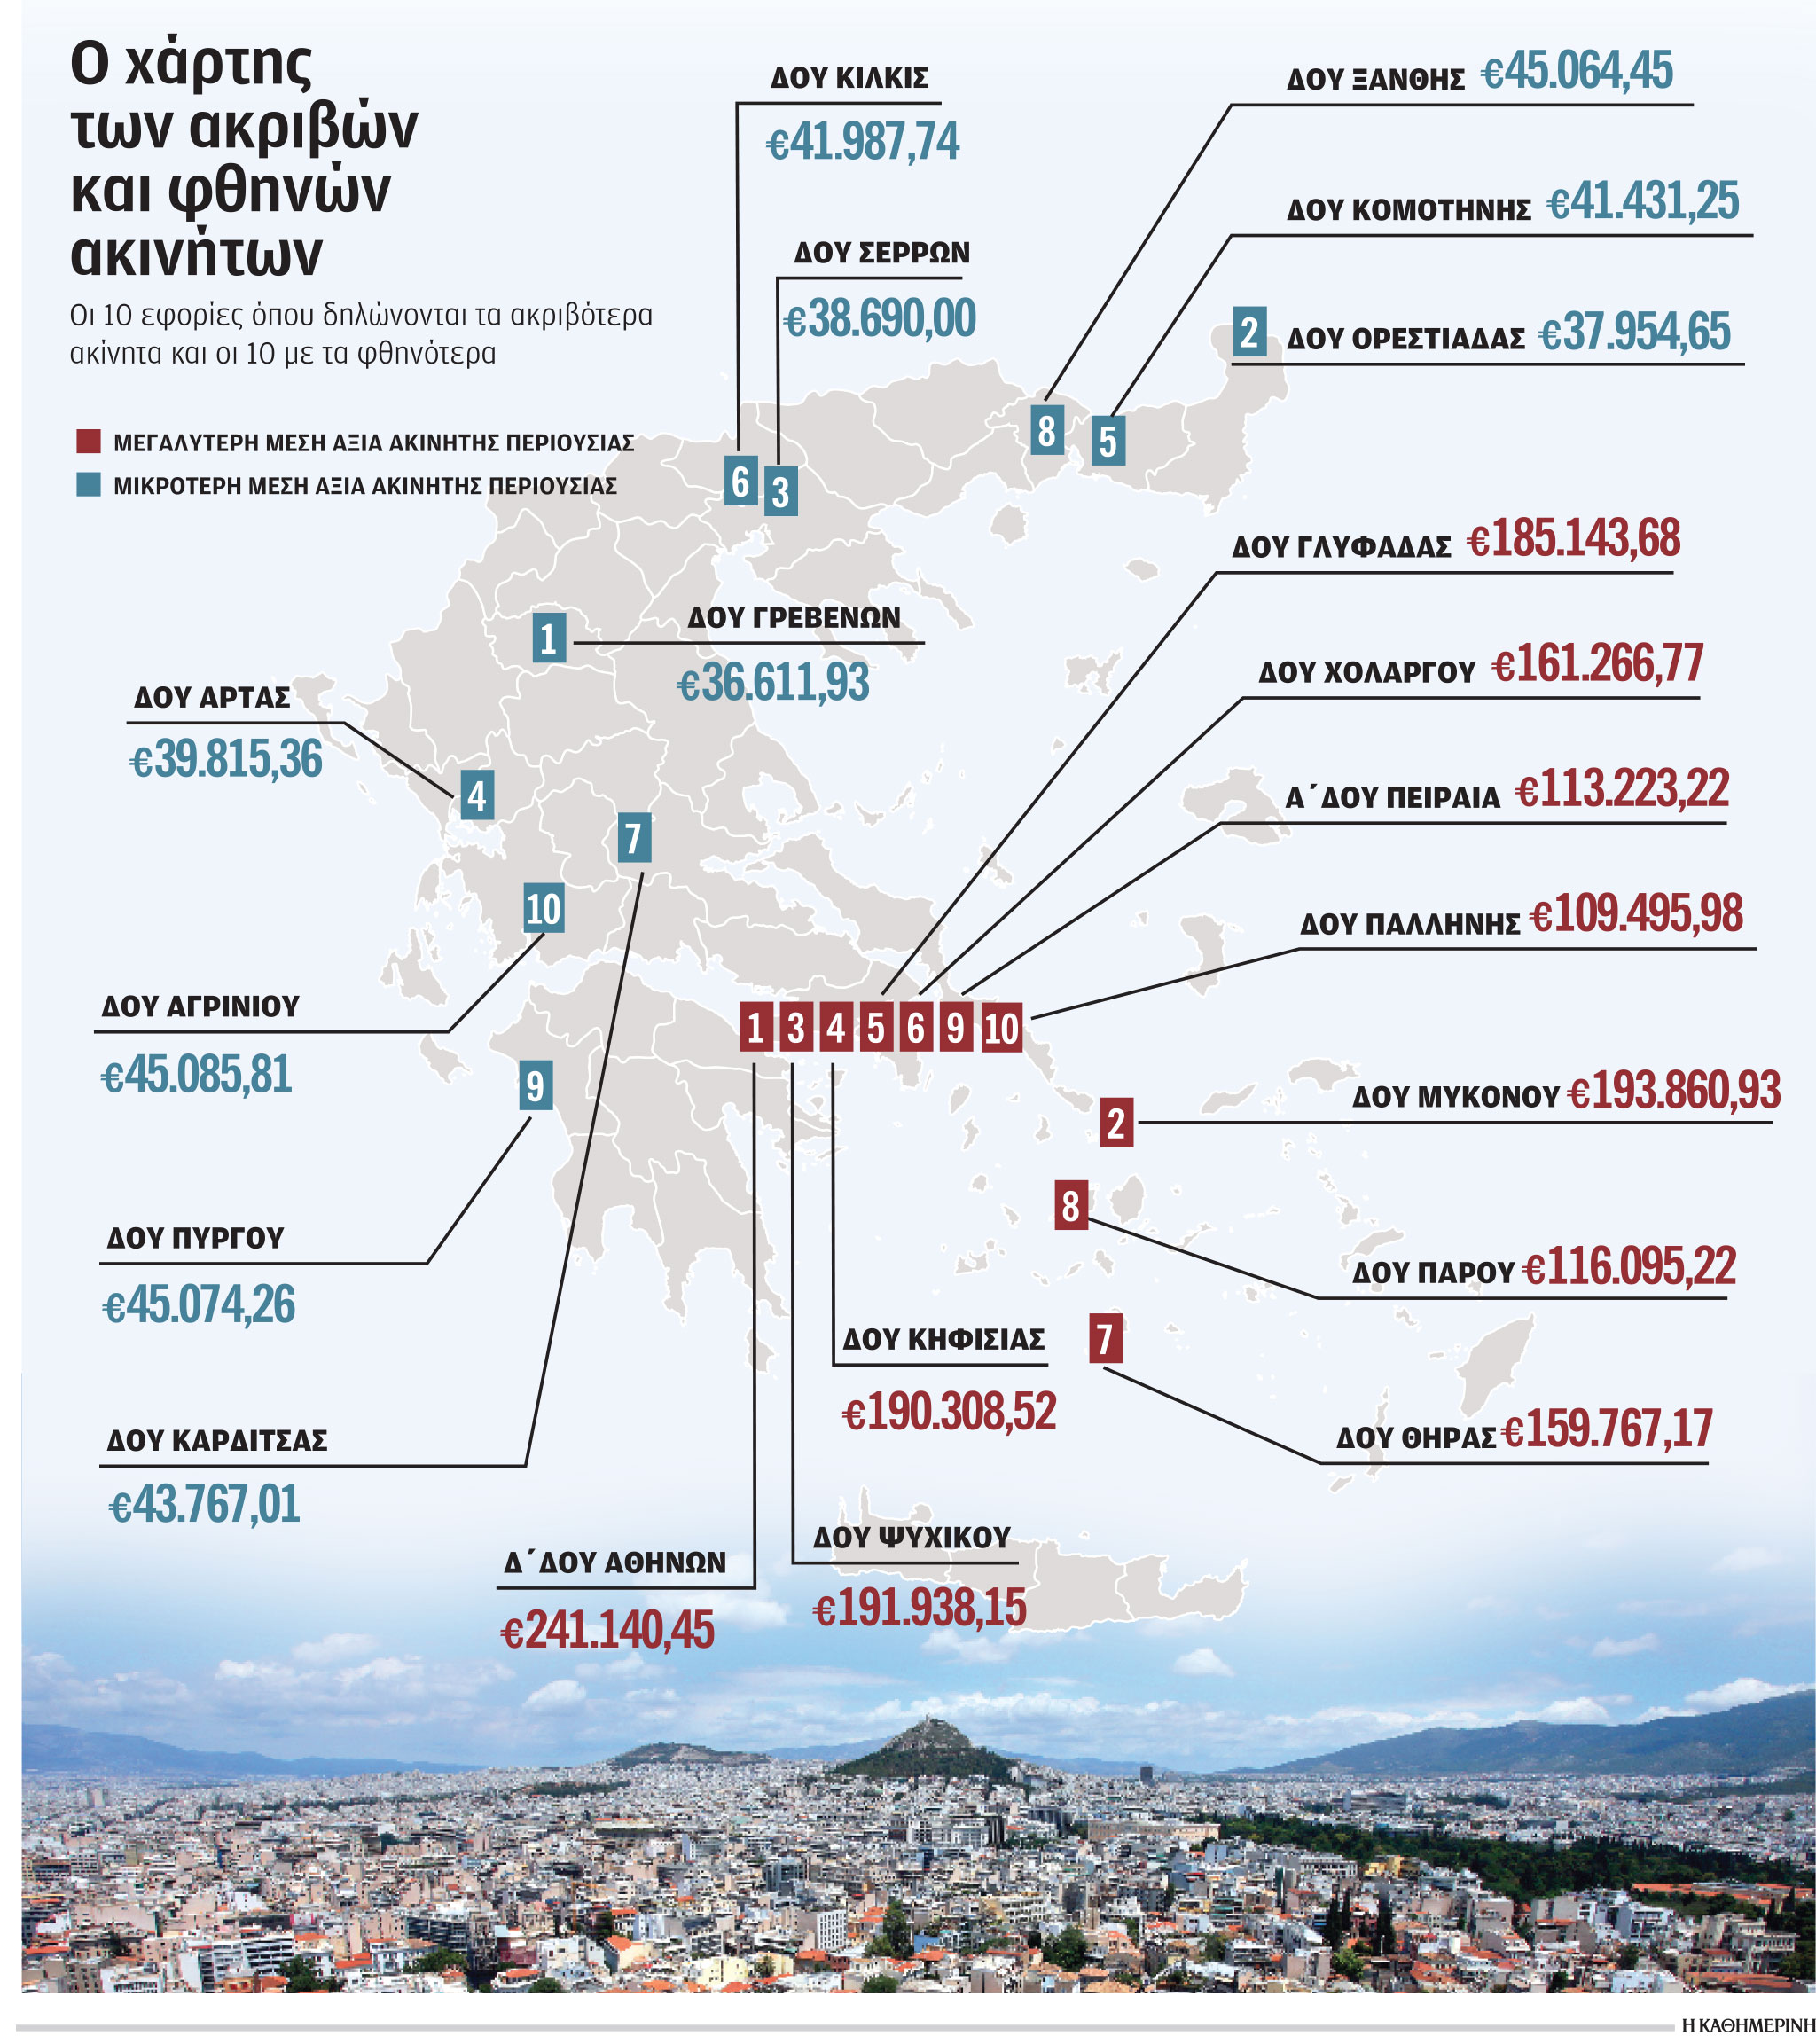 Οι μισοί Ελληνες έχουν ακίνητη περιουσία έως 50.000 ευρώ-1